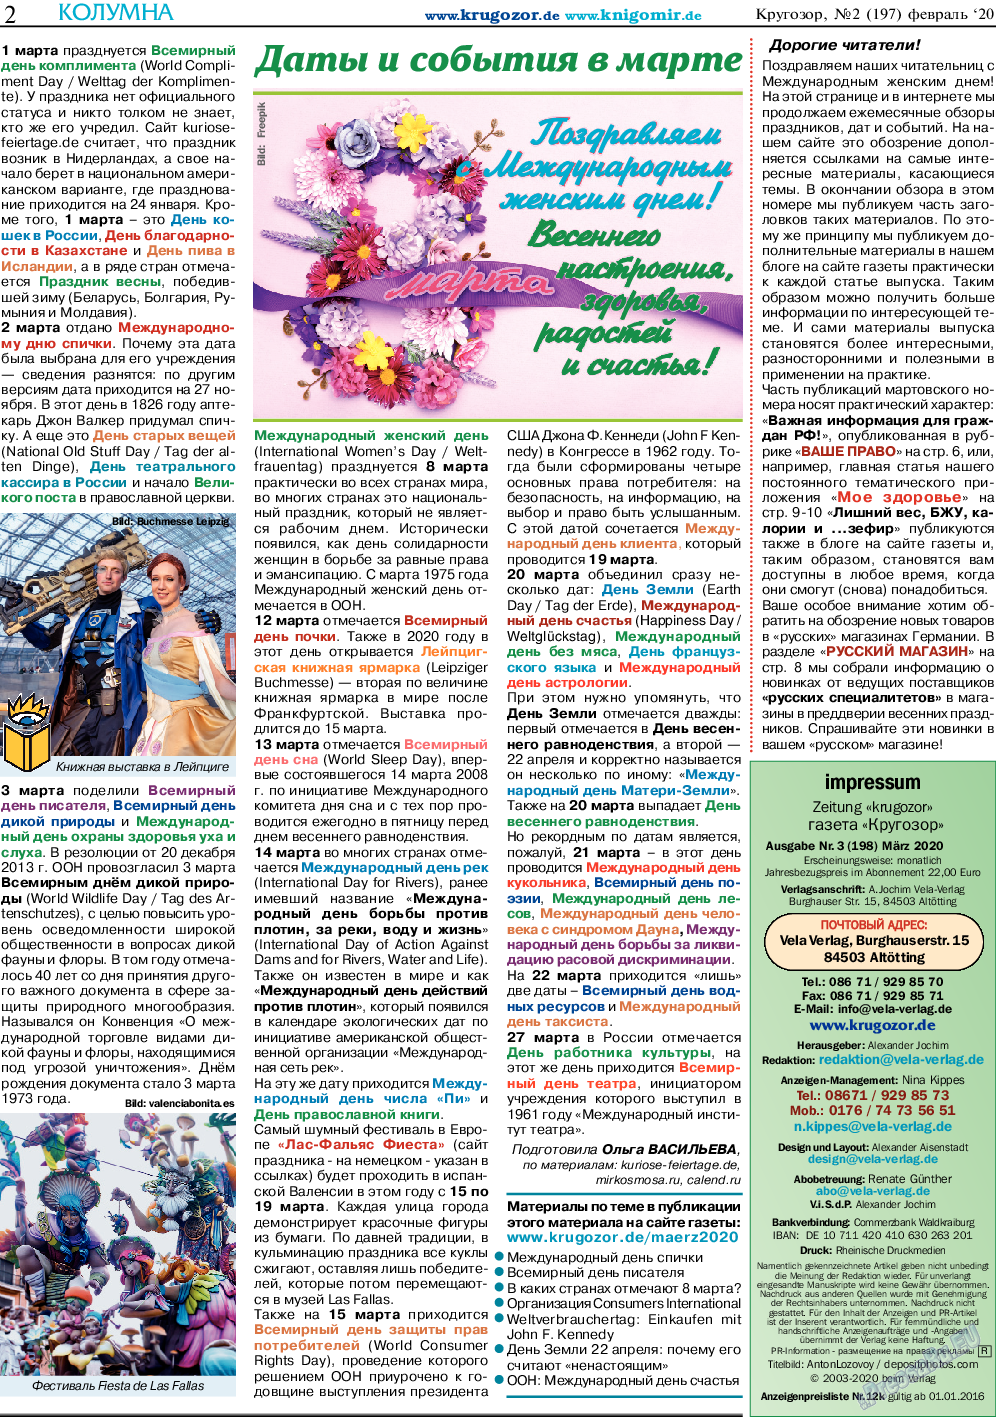 Кругозор, газета. 2020 №3 стр.2